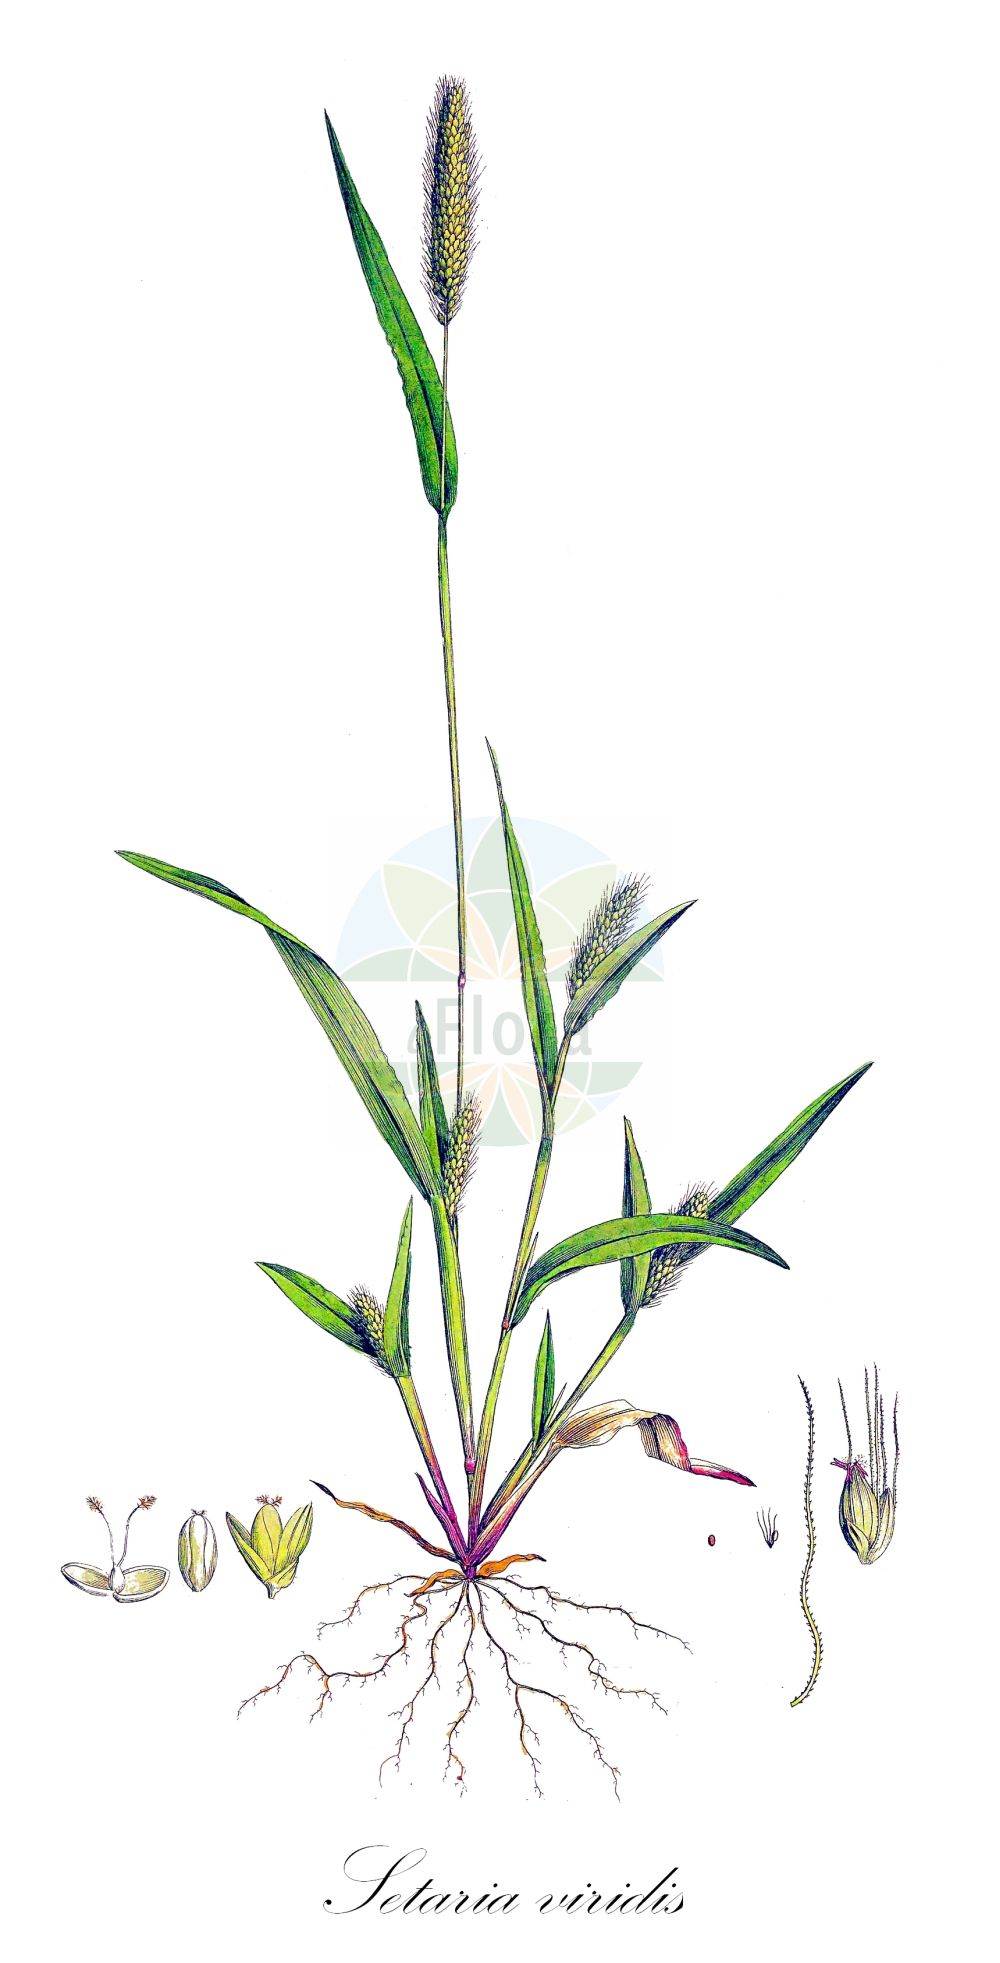 Historische Abbildung von Setaria viridis (Grüne Borstenhirse - Green Bristle-grass). Das Bild zeigt Blatt, Bluete, Frucht und Same. ---- Historical Drawing of Setaria viridis (Grüne Borstenhirse - Green Bristle-grass). The image is showing leaf, flower, fruit and seed.(Setaria viridis,Grüne Borstenhirse,Green Bristle-grass,Panicum viride,Setaria viridis,Setariopsis viridis,Gruene Borstenhirse,Gruener Fennich,Green Bristle-grass,Bottlegrass,Green Foxtail,Green Panicgrass,Green Pigeongrass,Wild Foxtail Millet,Setaria,Borstenhirse,Bristlegrass,Poaceae,Süßgräser,Grass family,Blatt,Bluete,Frucht,Same,leaf,flower,fruit,seed,Curtis (1777-1798))